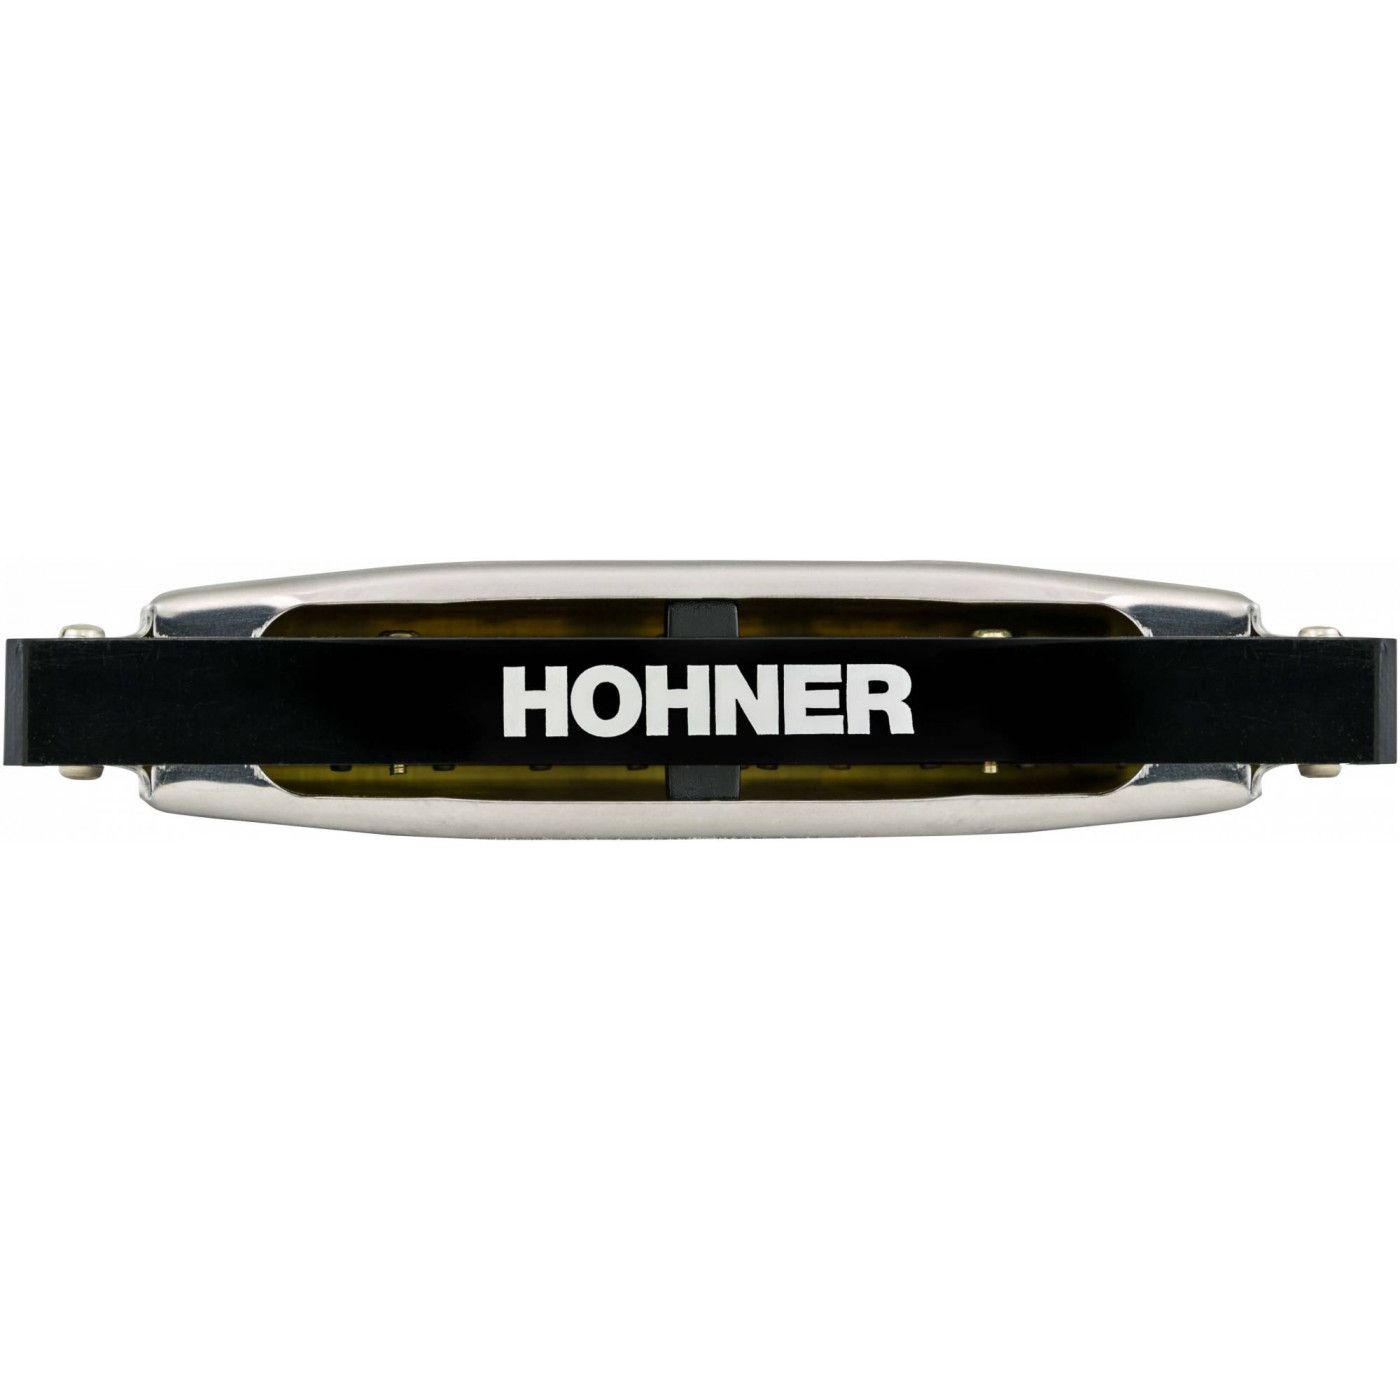 Детальная картинка товара Hohner Silver Star 504/20 C в магазине Музыкальная Тема